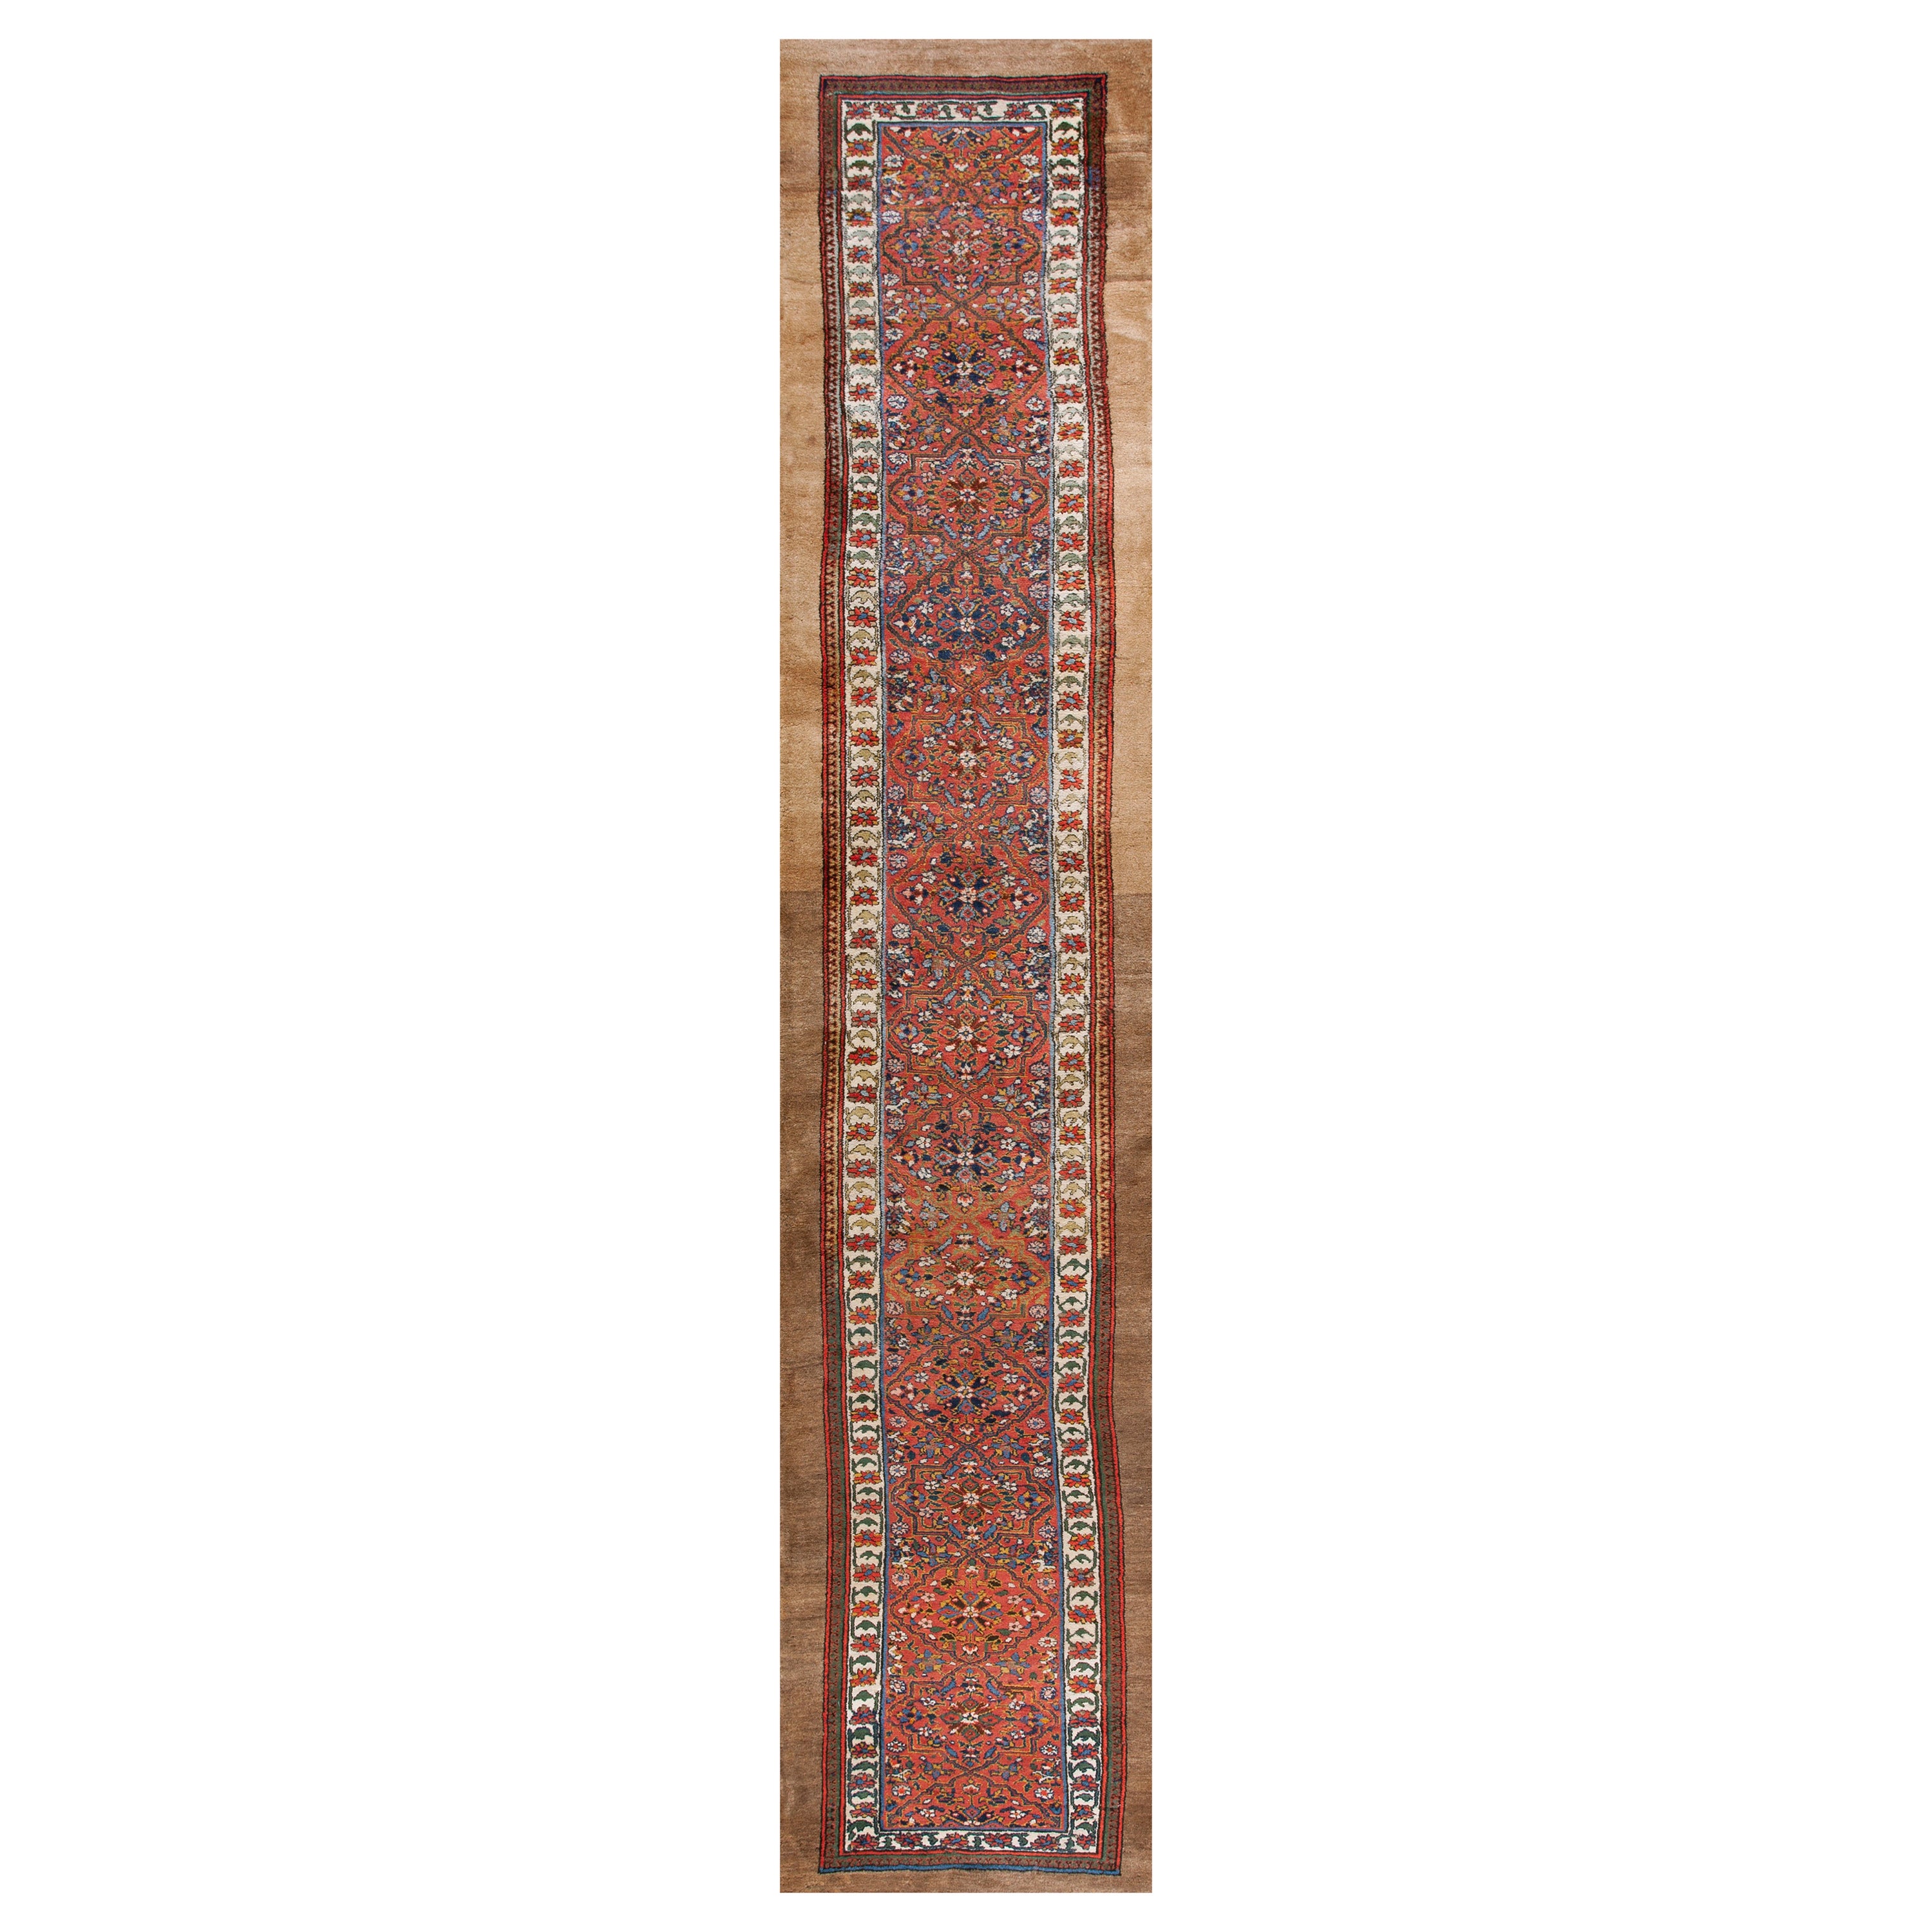 Antique Persian Serab Rug 3'2" x 15'6"